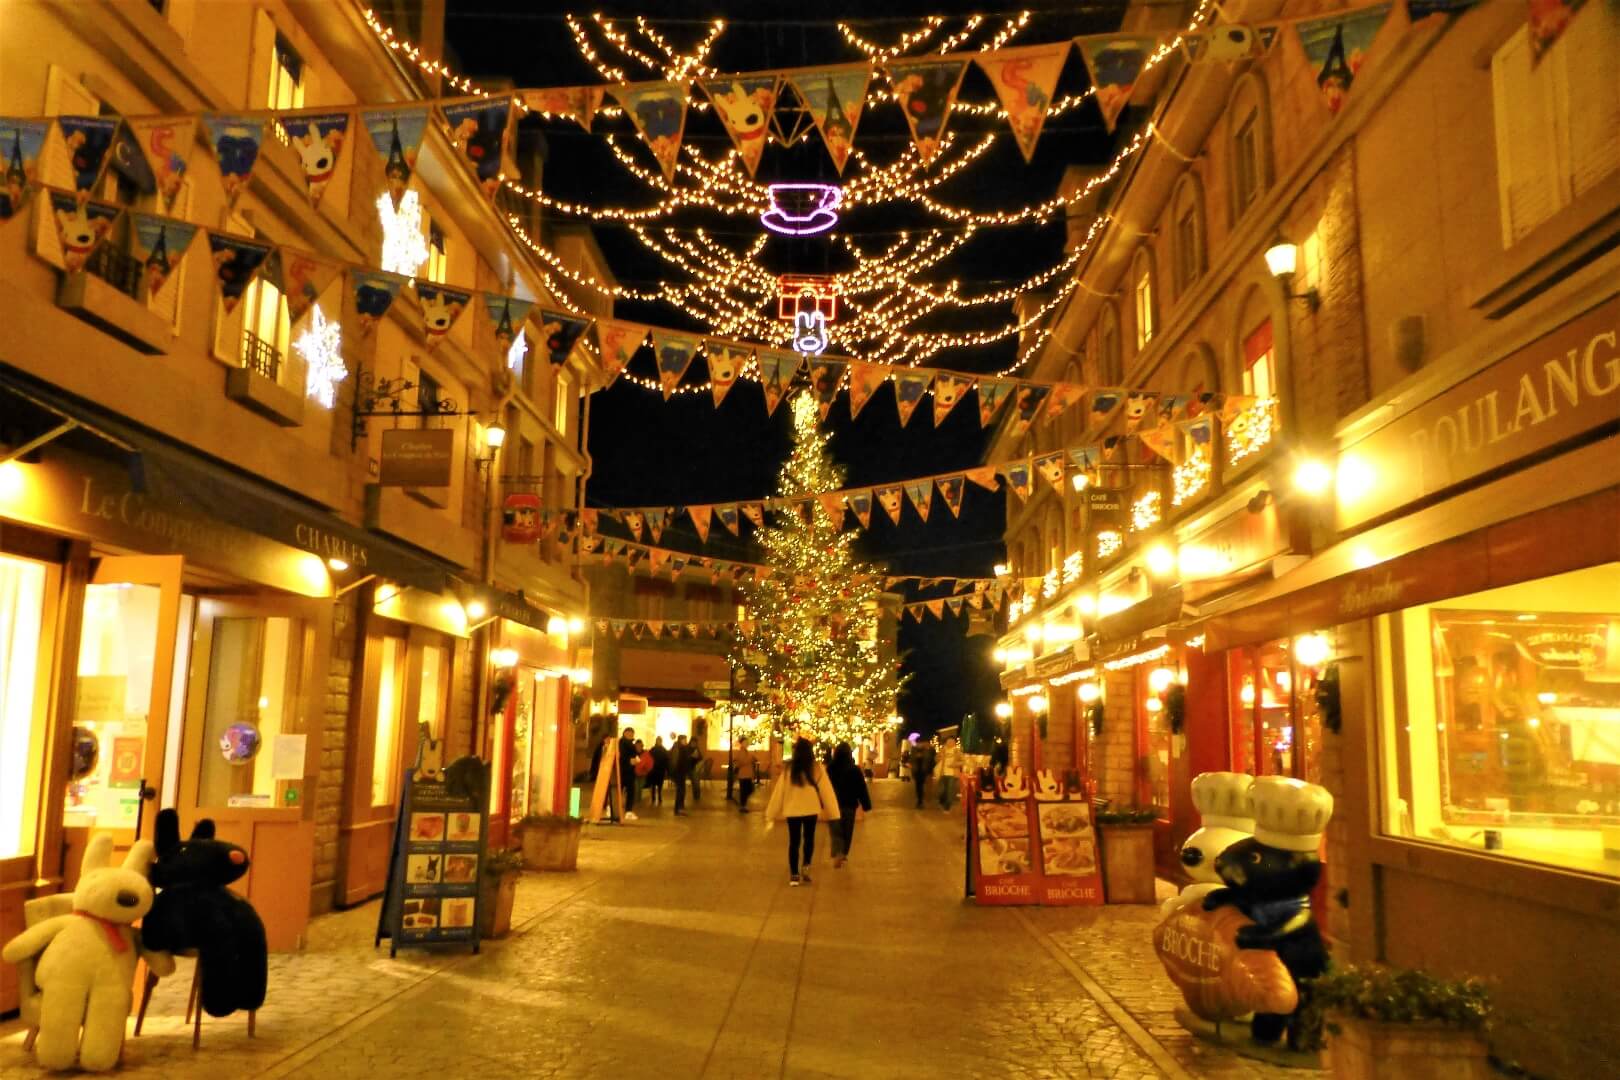 富士急ハイランド リサとガスパール タウン イルミネーション 街もクリスマスムード一色